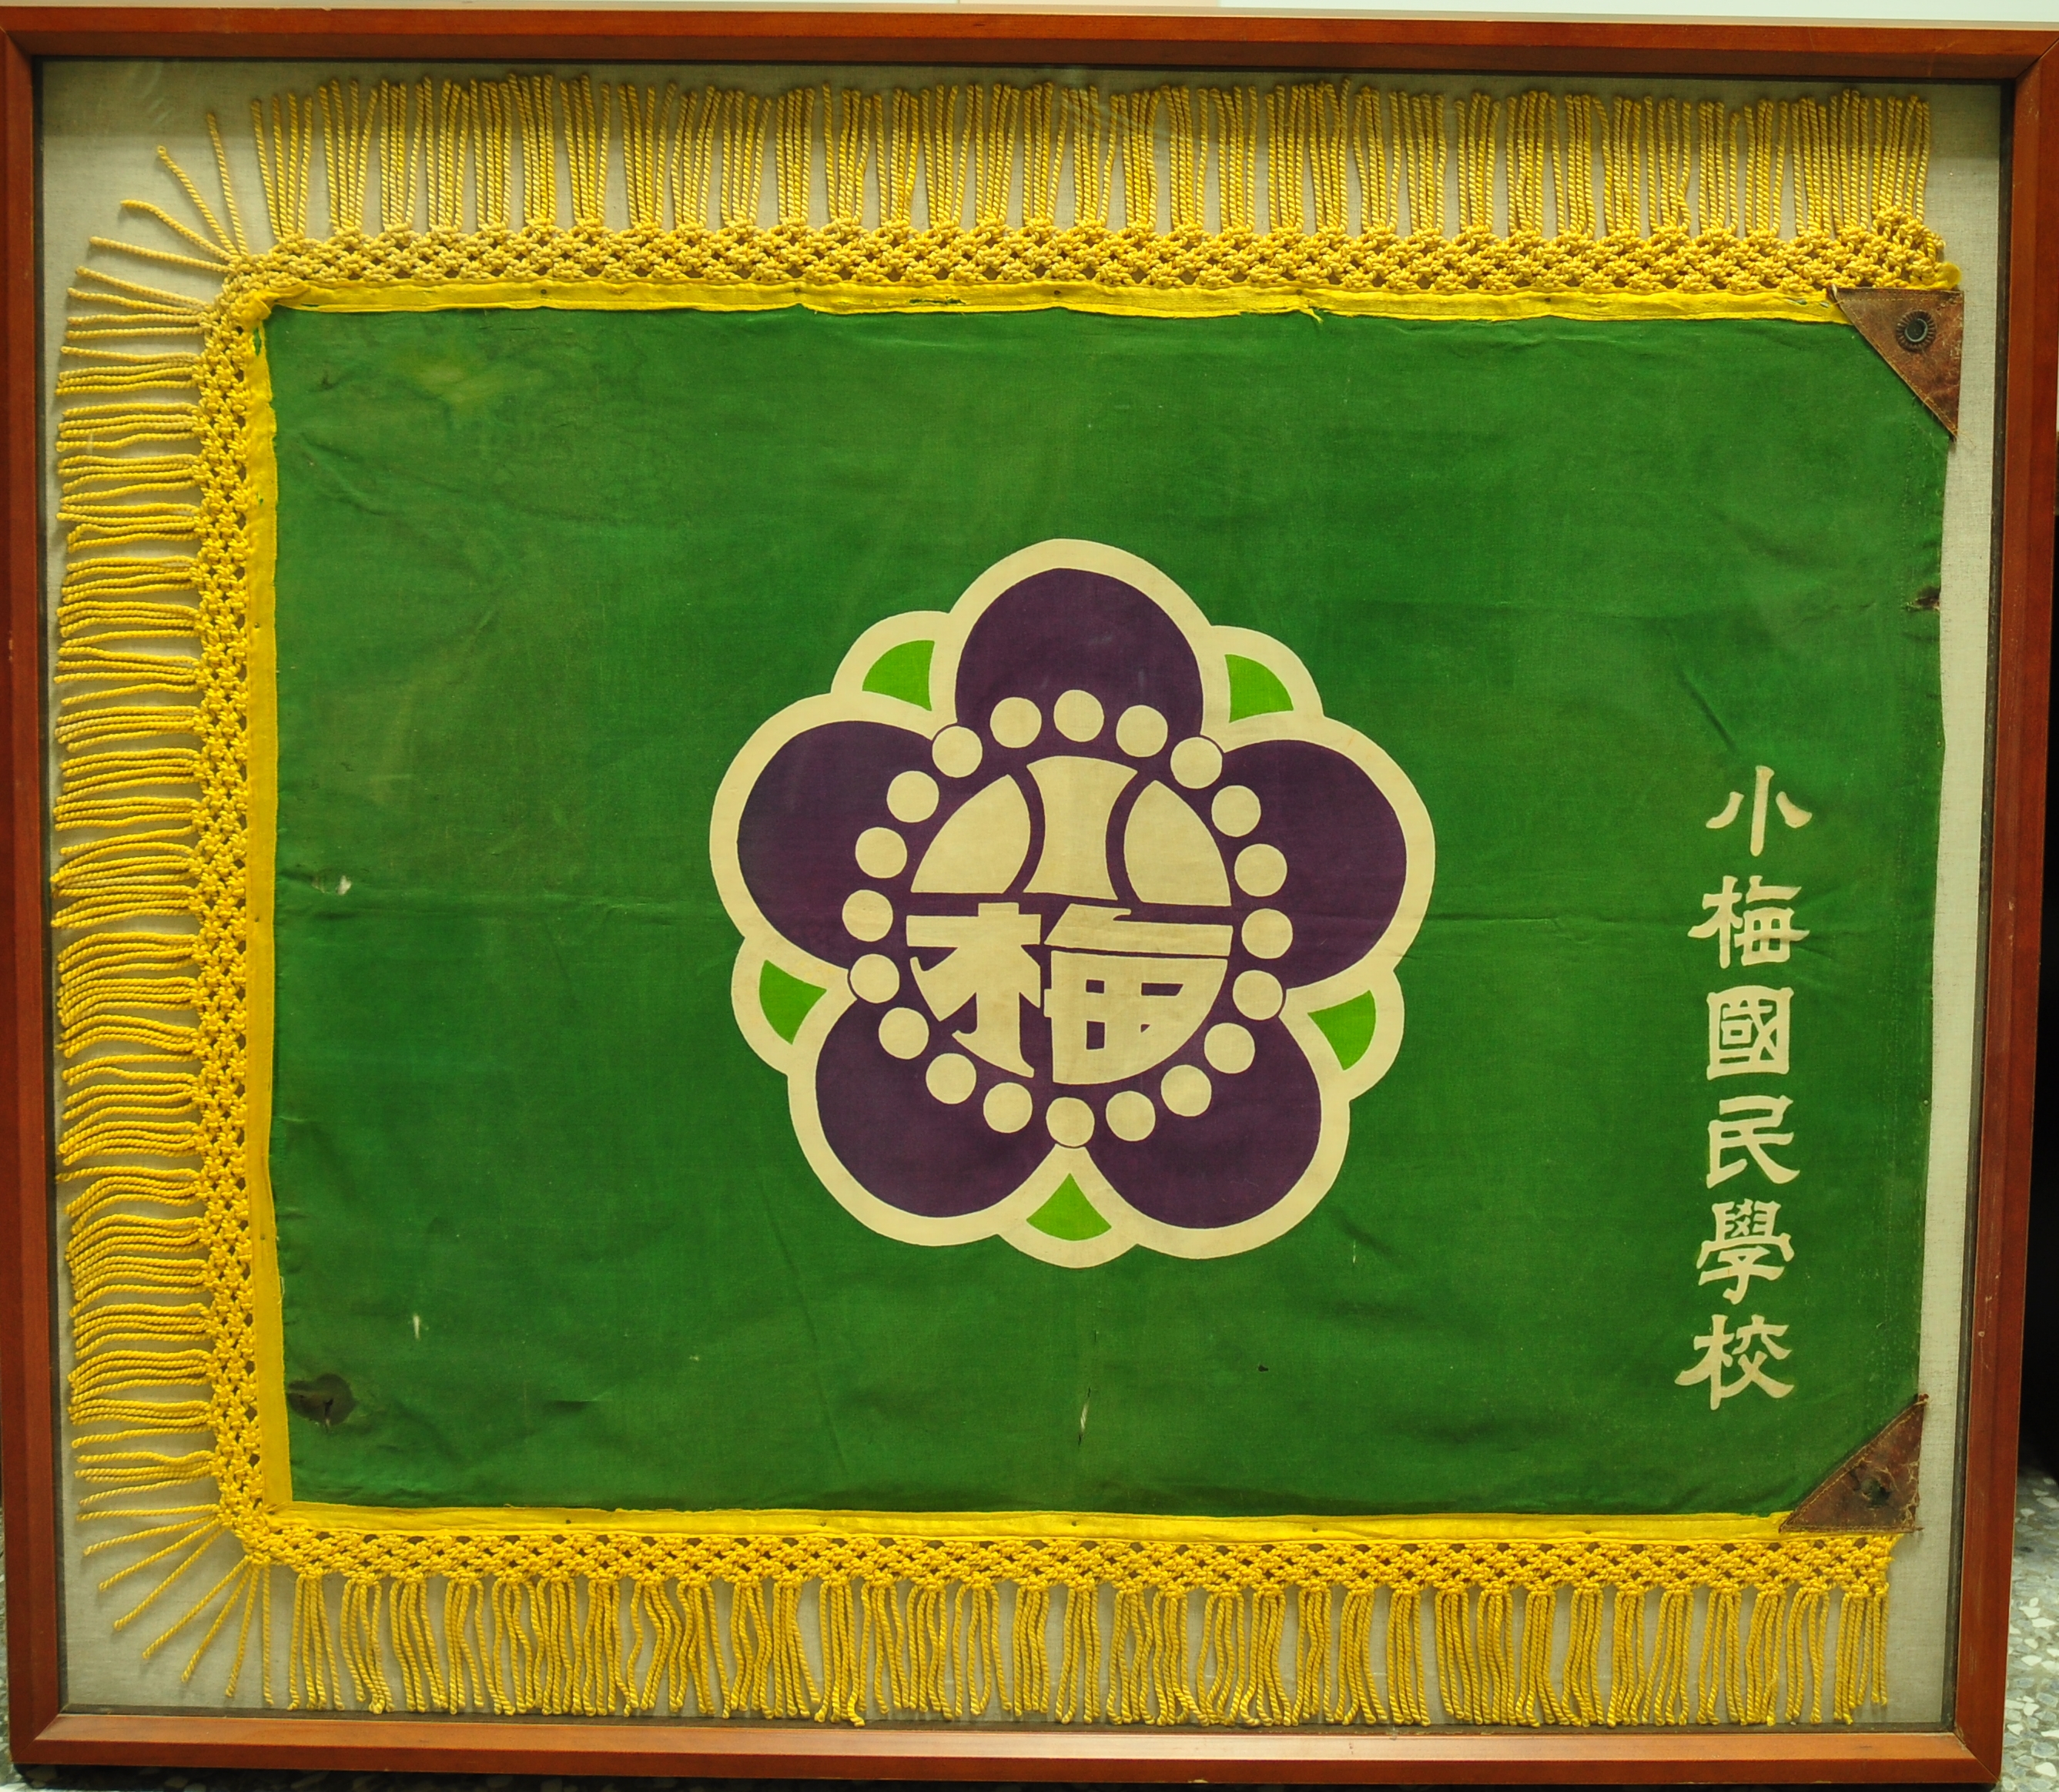 小梅國民學校校旗